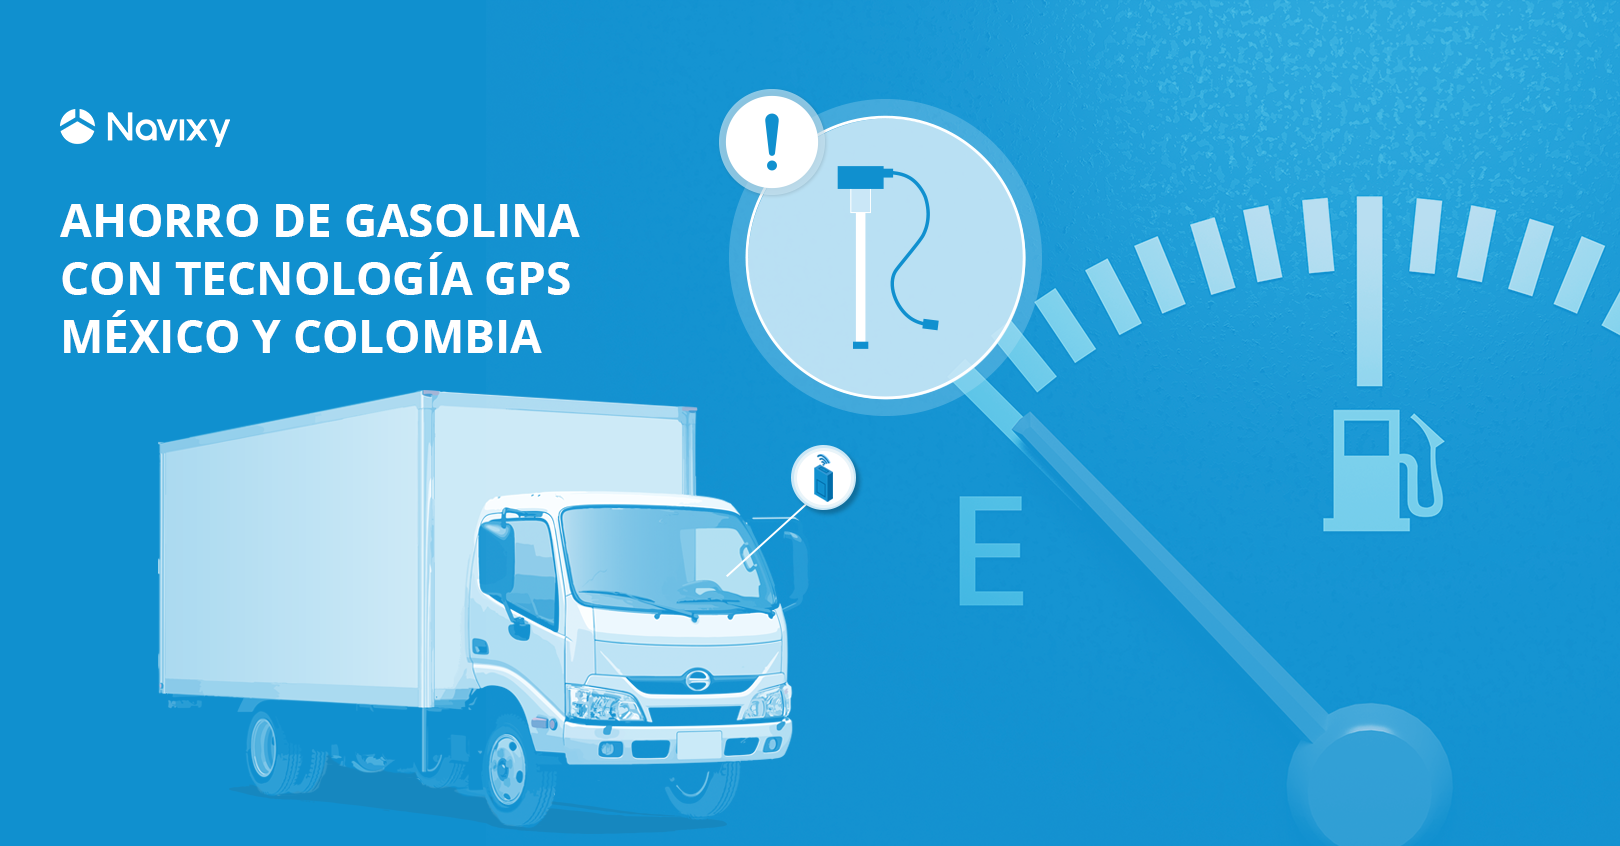 Ahorro de gasolina con tecnología GPS en México y Colombia